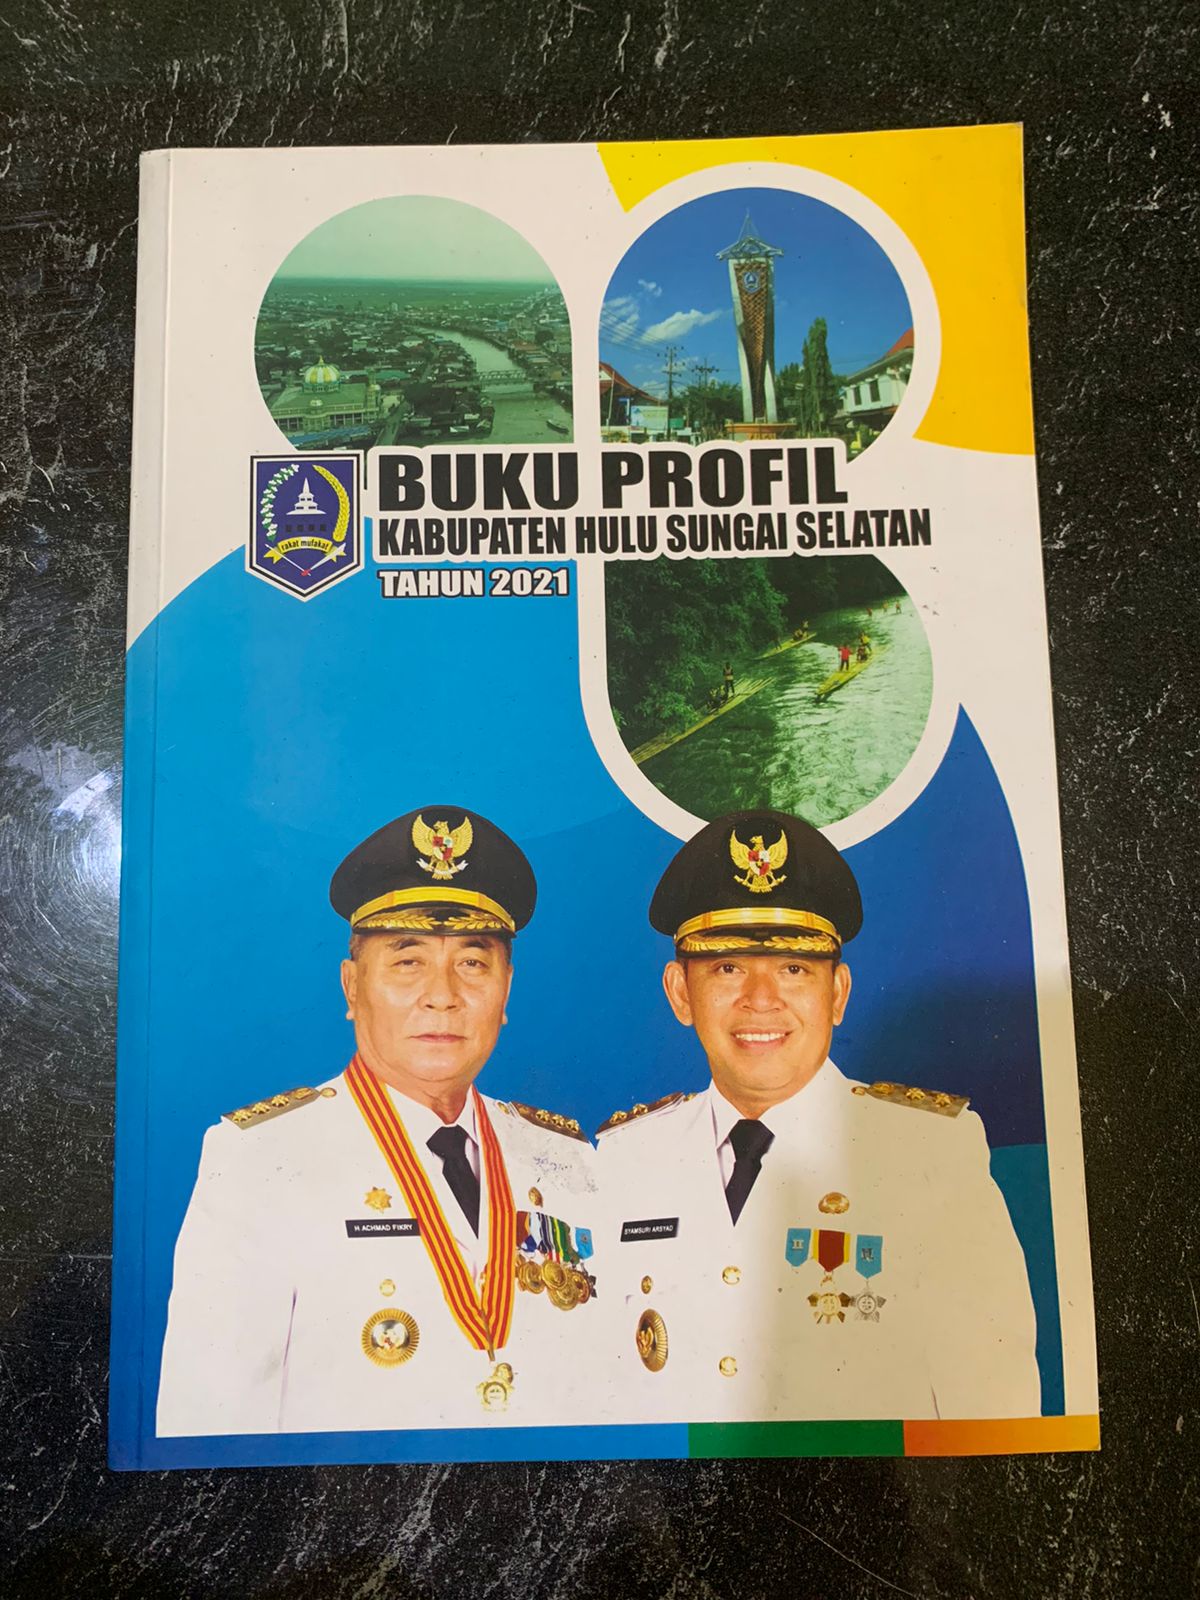 Buku Profil Kabupaten